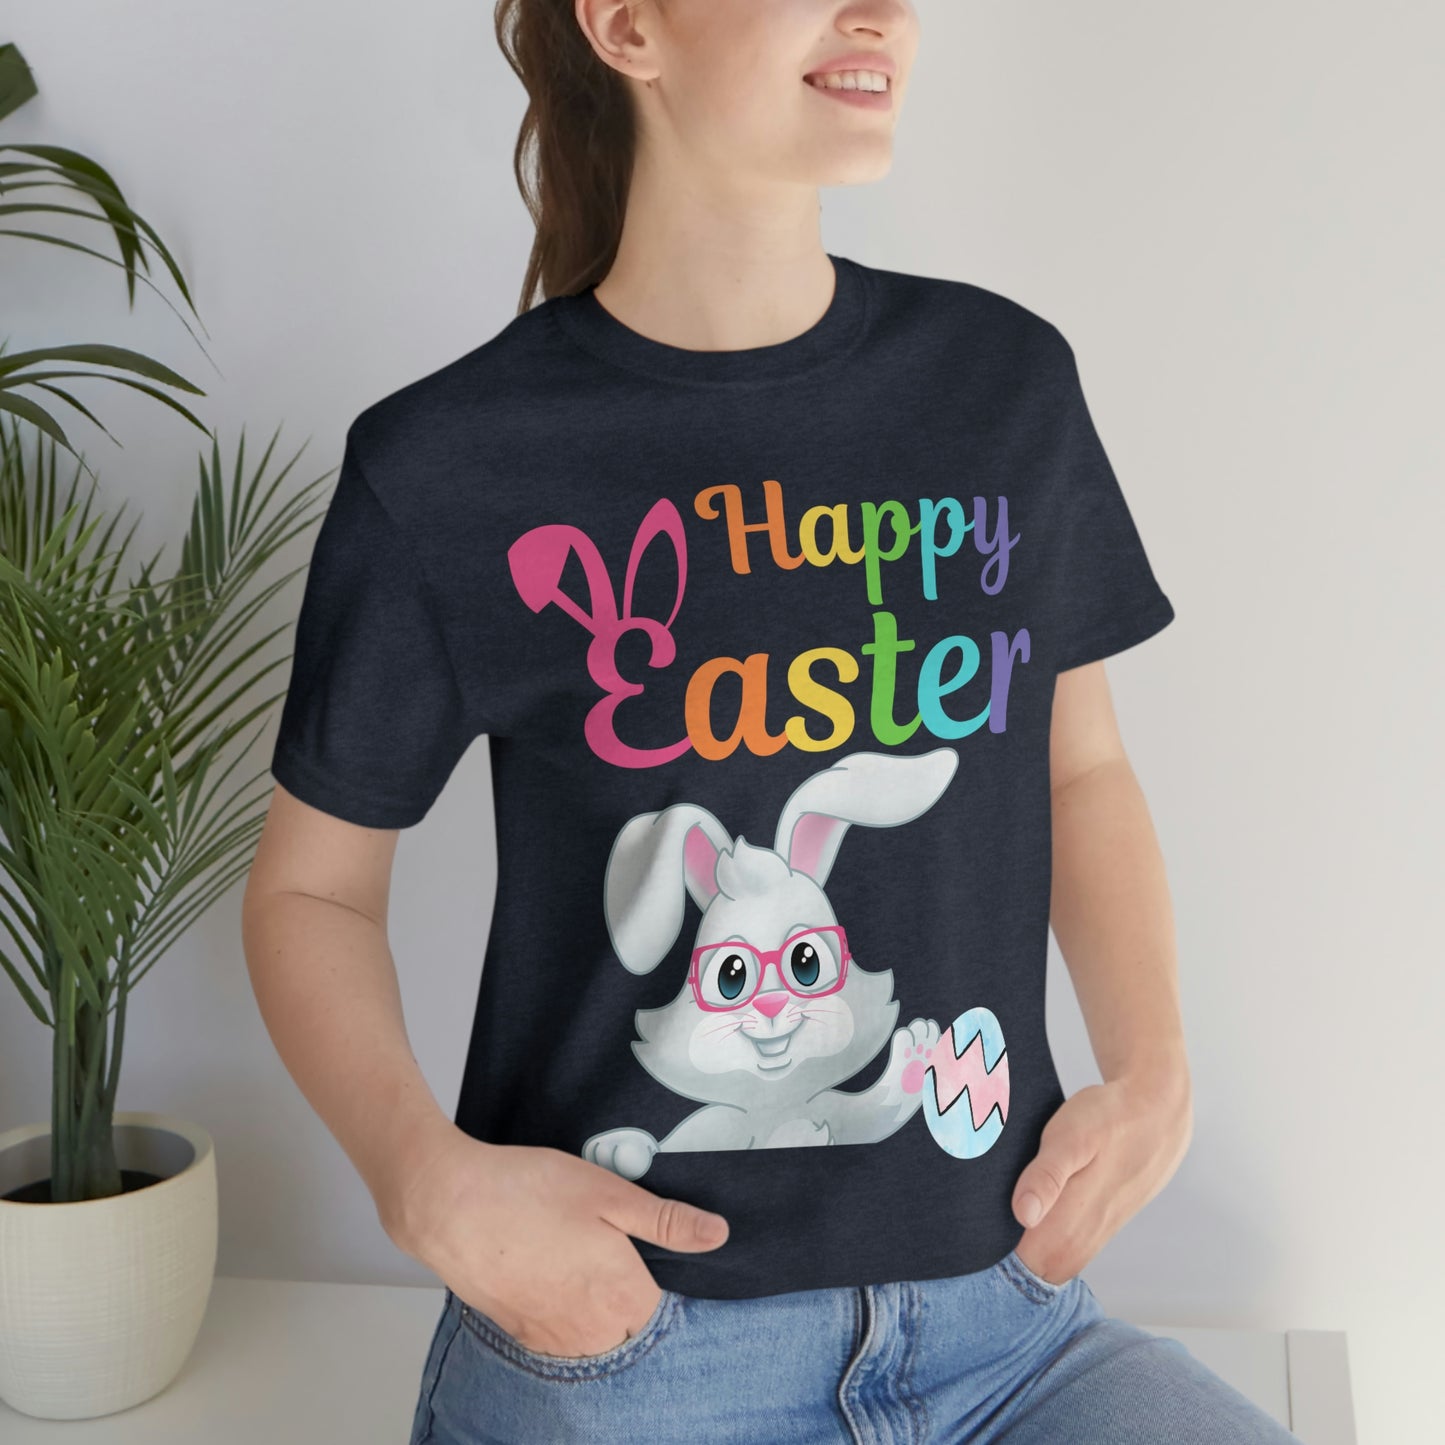 Happy Easter Shirt Easter Gift women Easter Shirt Men Easter shirt Easter egg - Easter Day Shirt Easter Bunny Easter egg shirt easter Basket